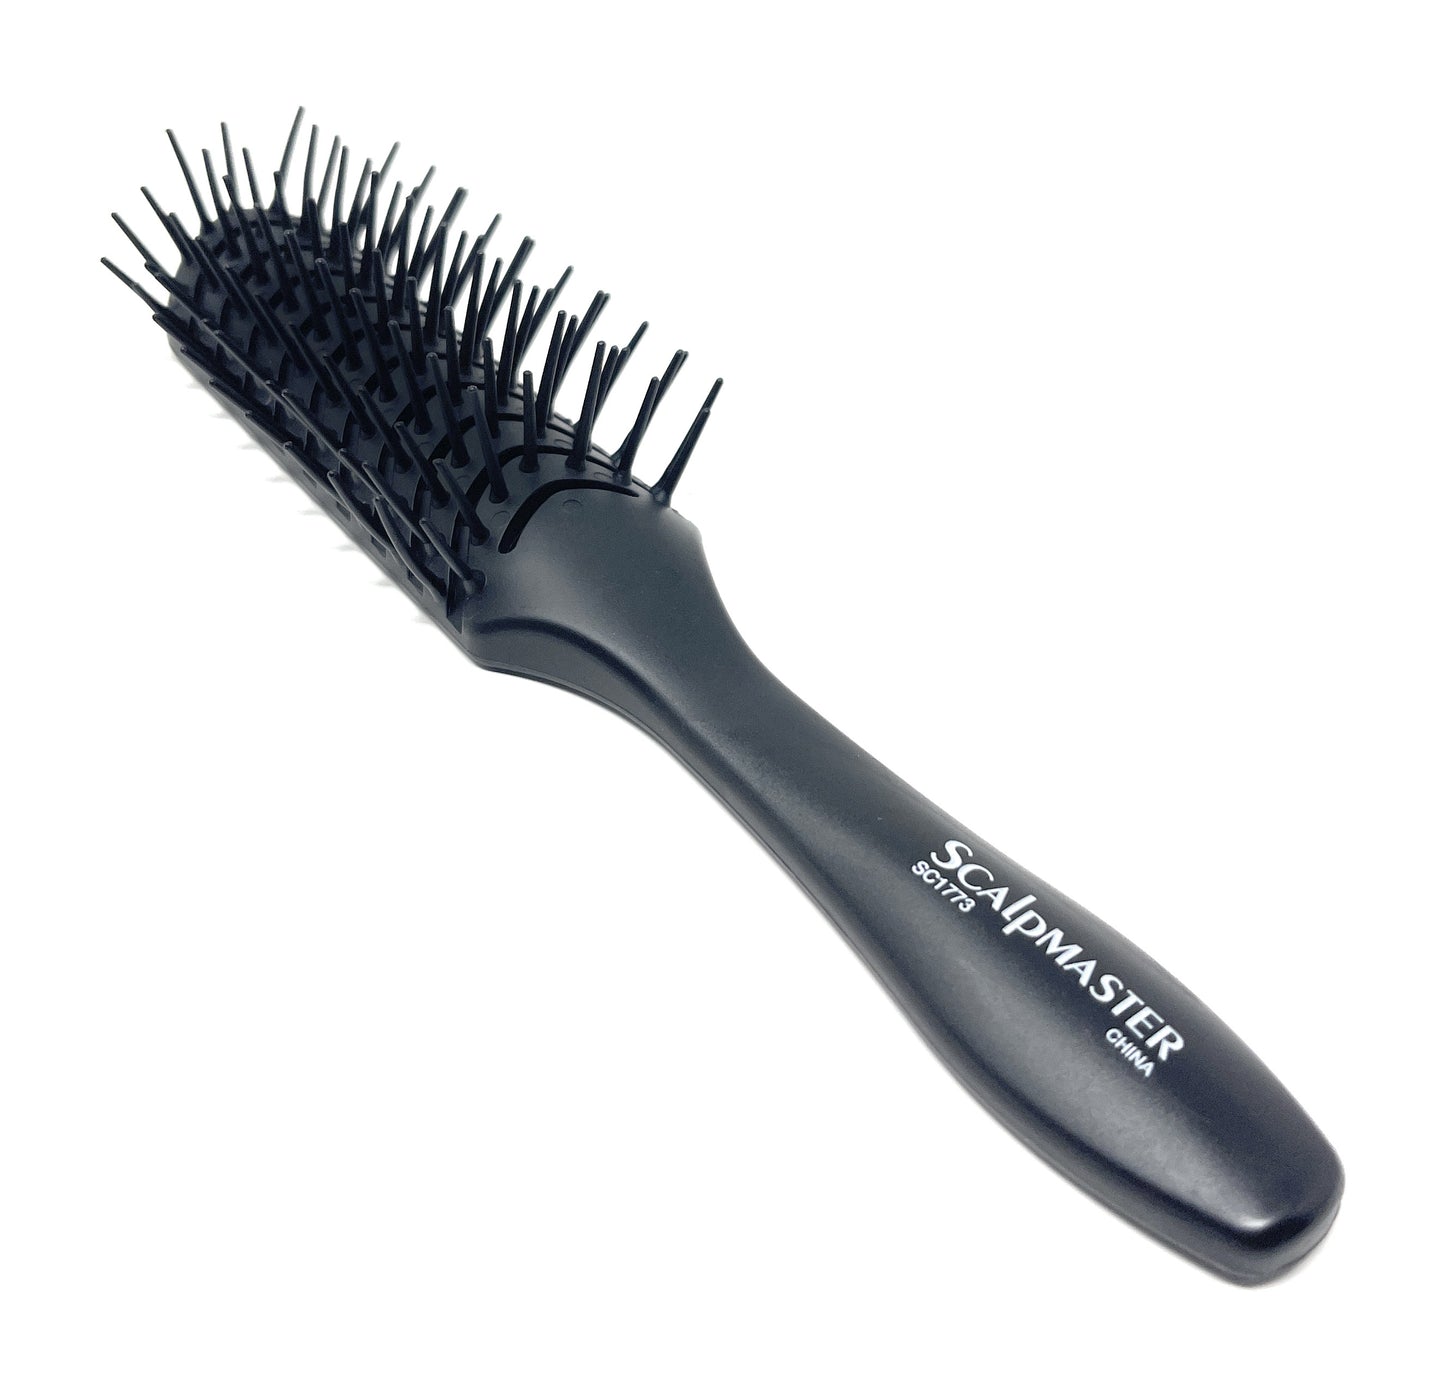 Scalpmaster Vent Hair Brush Soft Flexible Teeth For Detangling Hair Brush Straightening Brush 1 Pc.